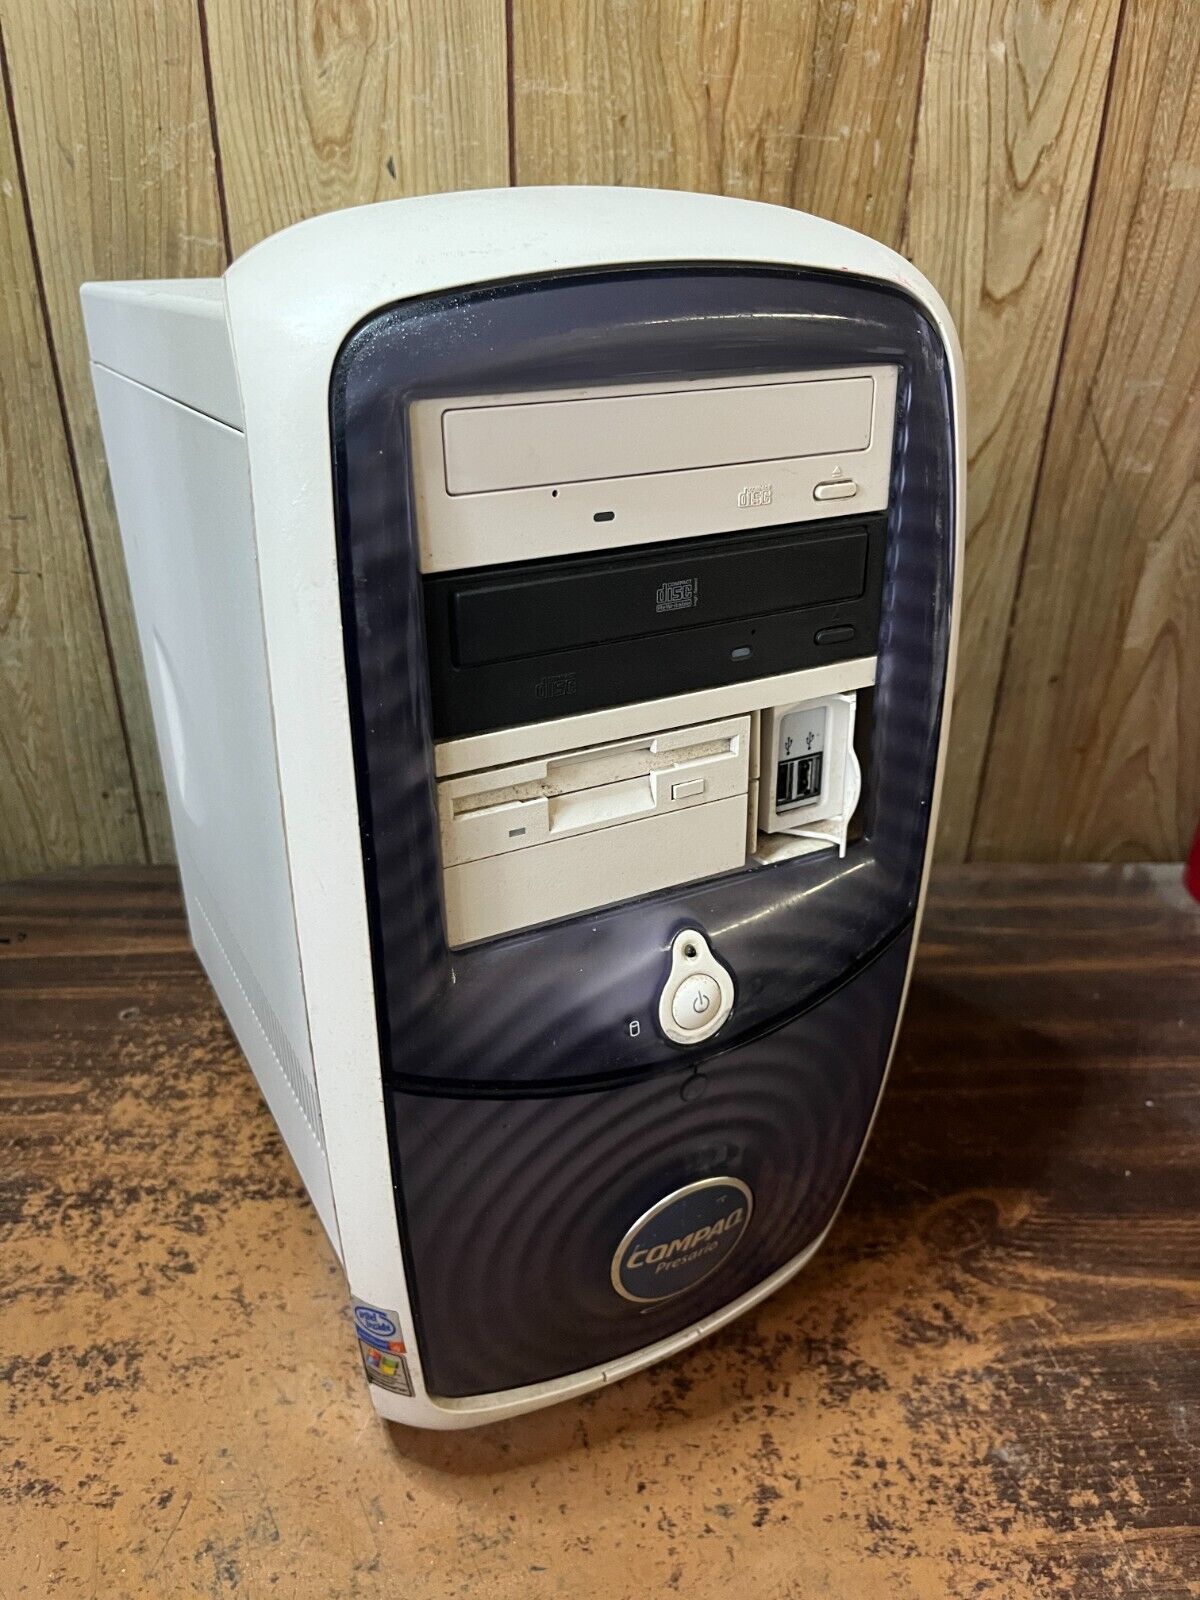 Compaq Presario 5000 Vintage Windows XP Computer RS232 Serial Parallel Db25 Flop